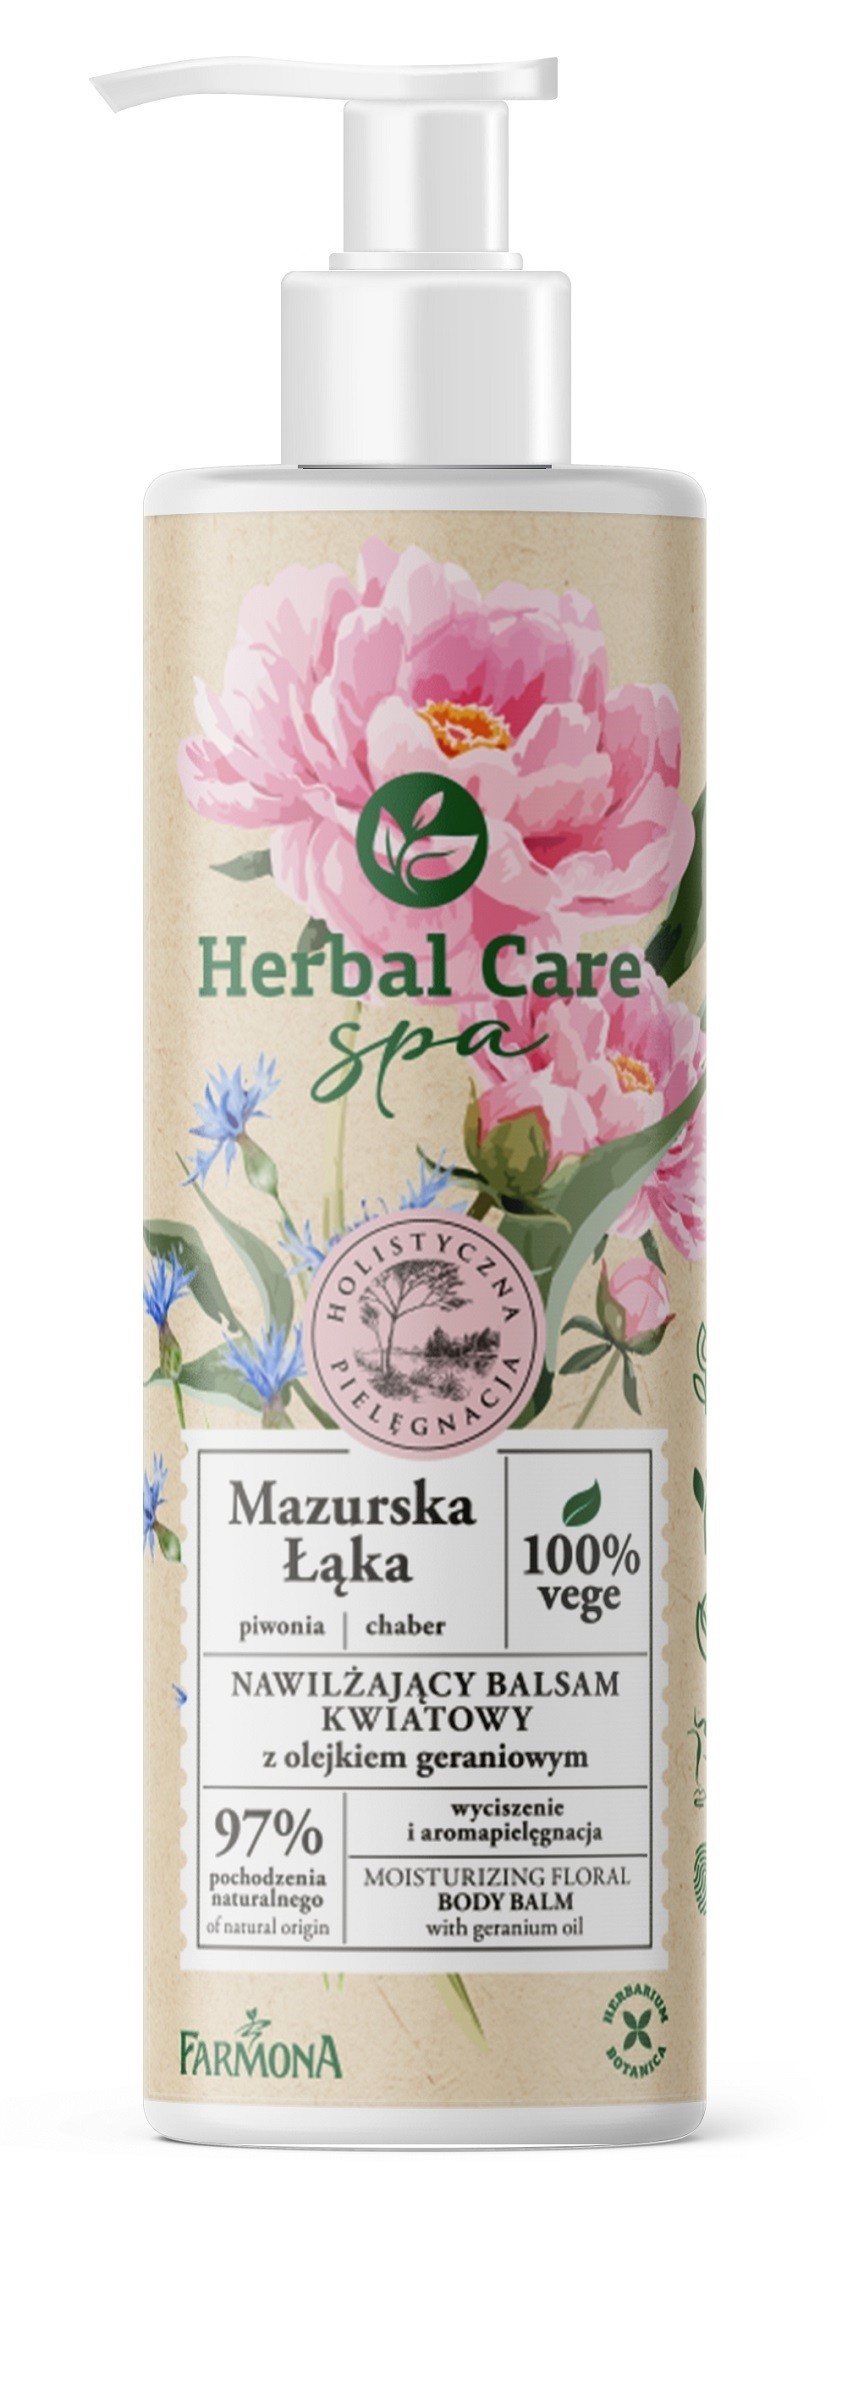 Farmona Herbal Care Spa Nawilżający Balsam kwiatowy Mazurska Łąka 400ml